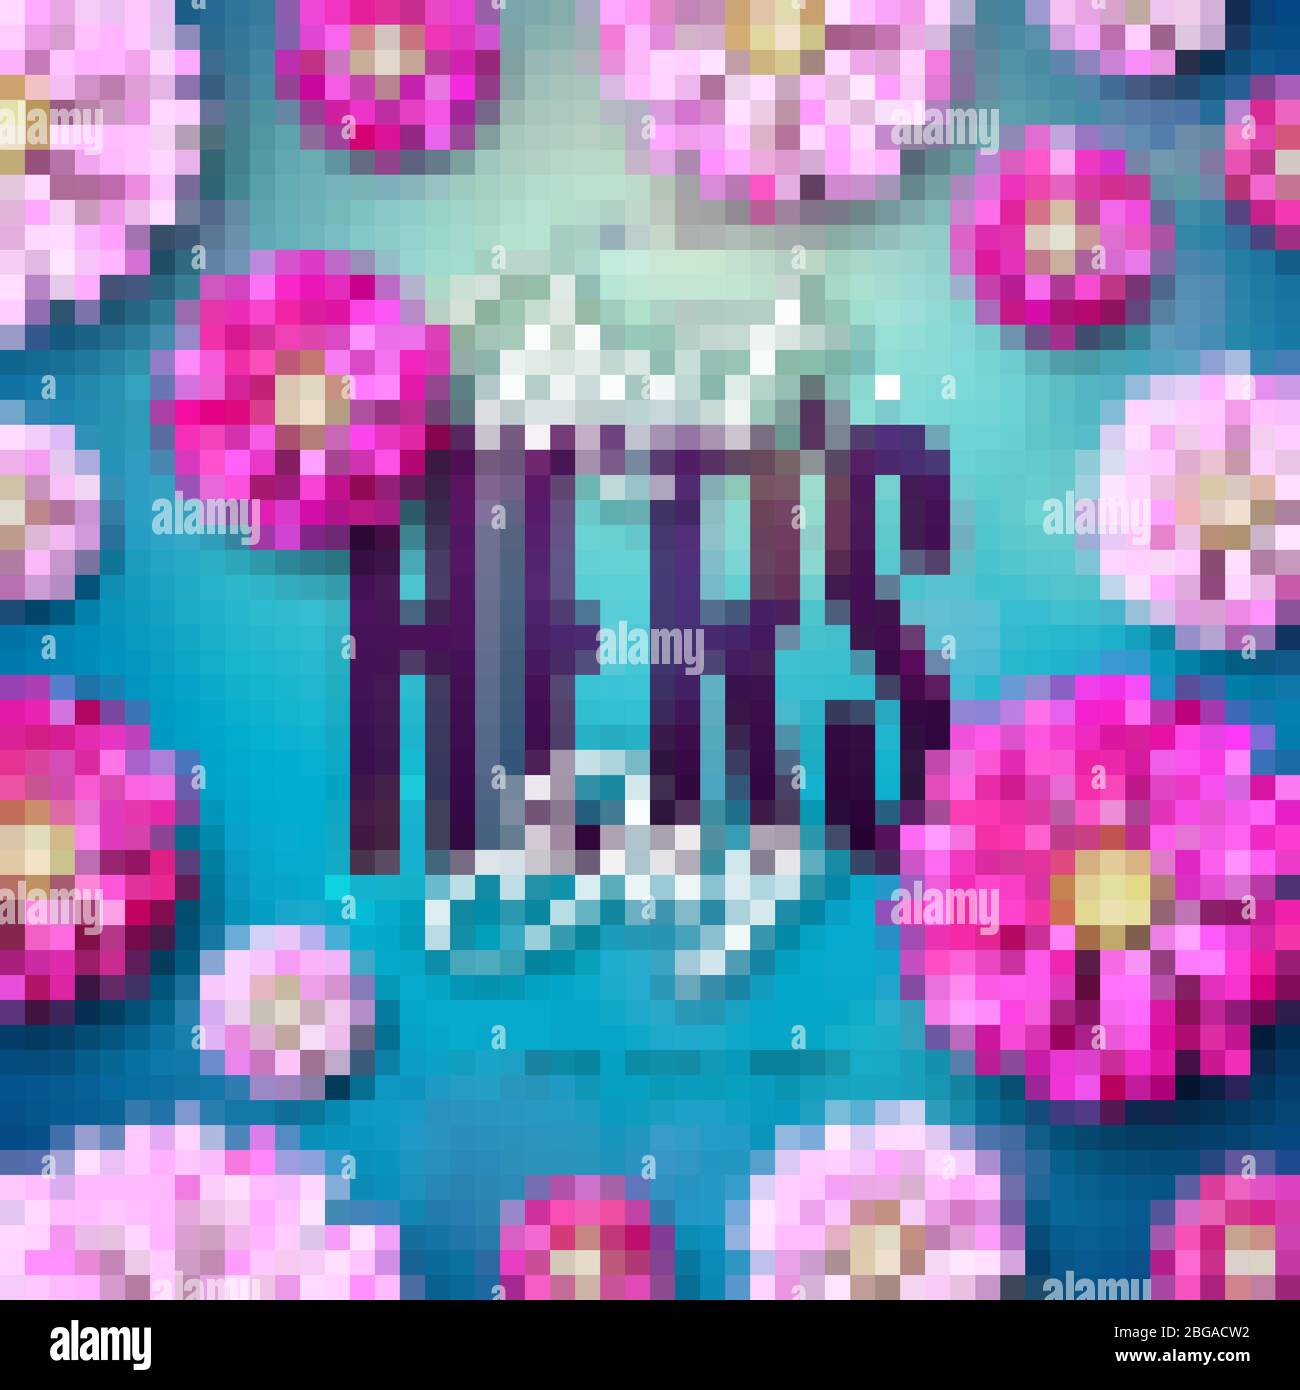 Happy Mother's Day Grußkarte Design mit Blumen- und Typographiebrief auf blauem Hintergrund. Vector Celebration Illustration Template für Banner Stock Vektor